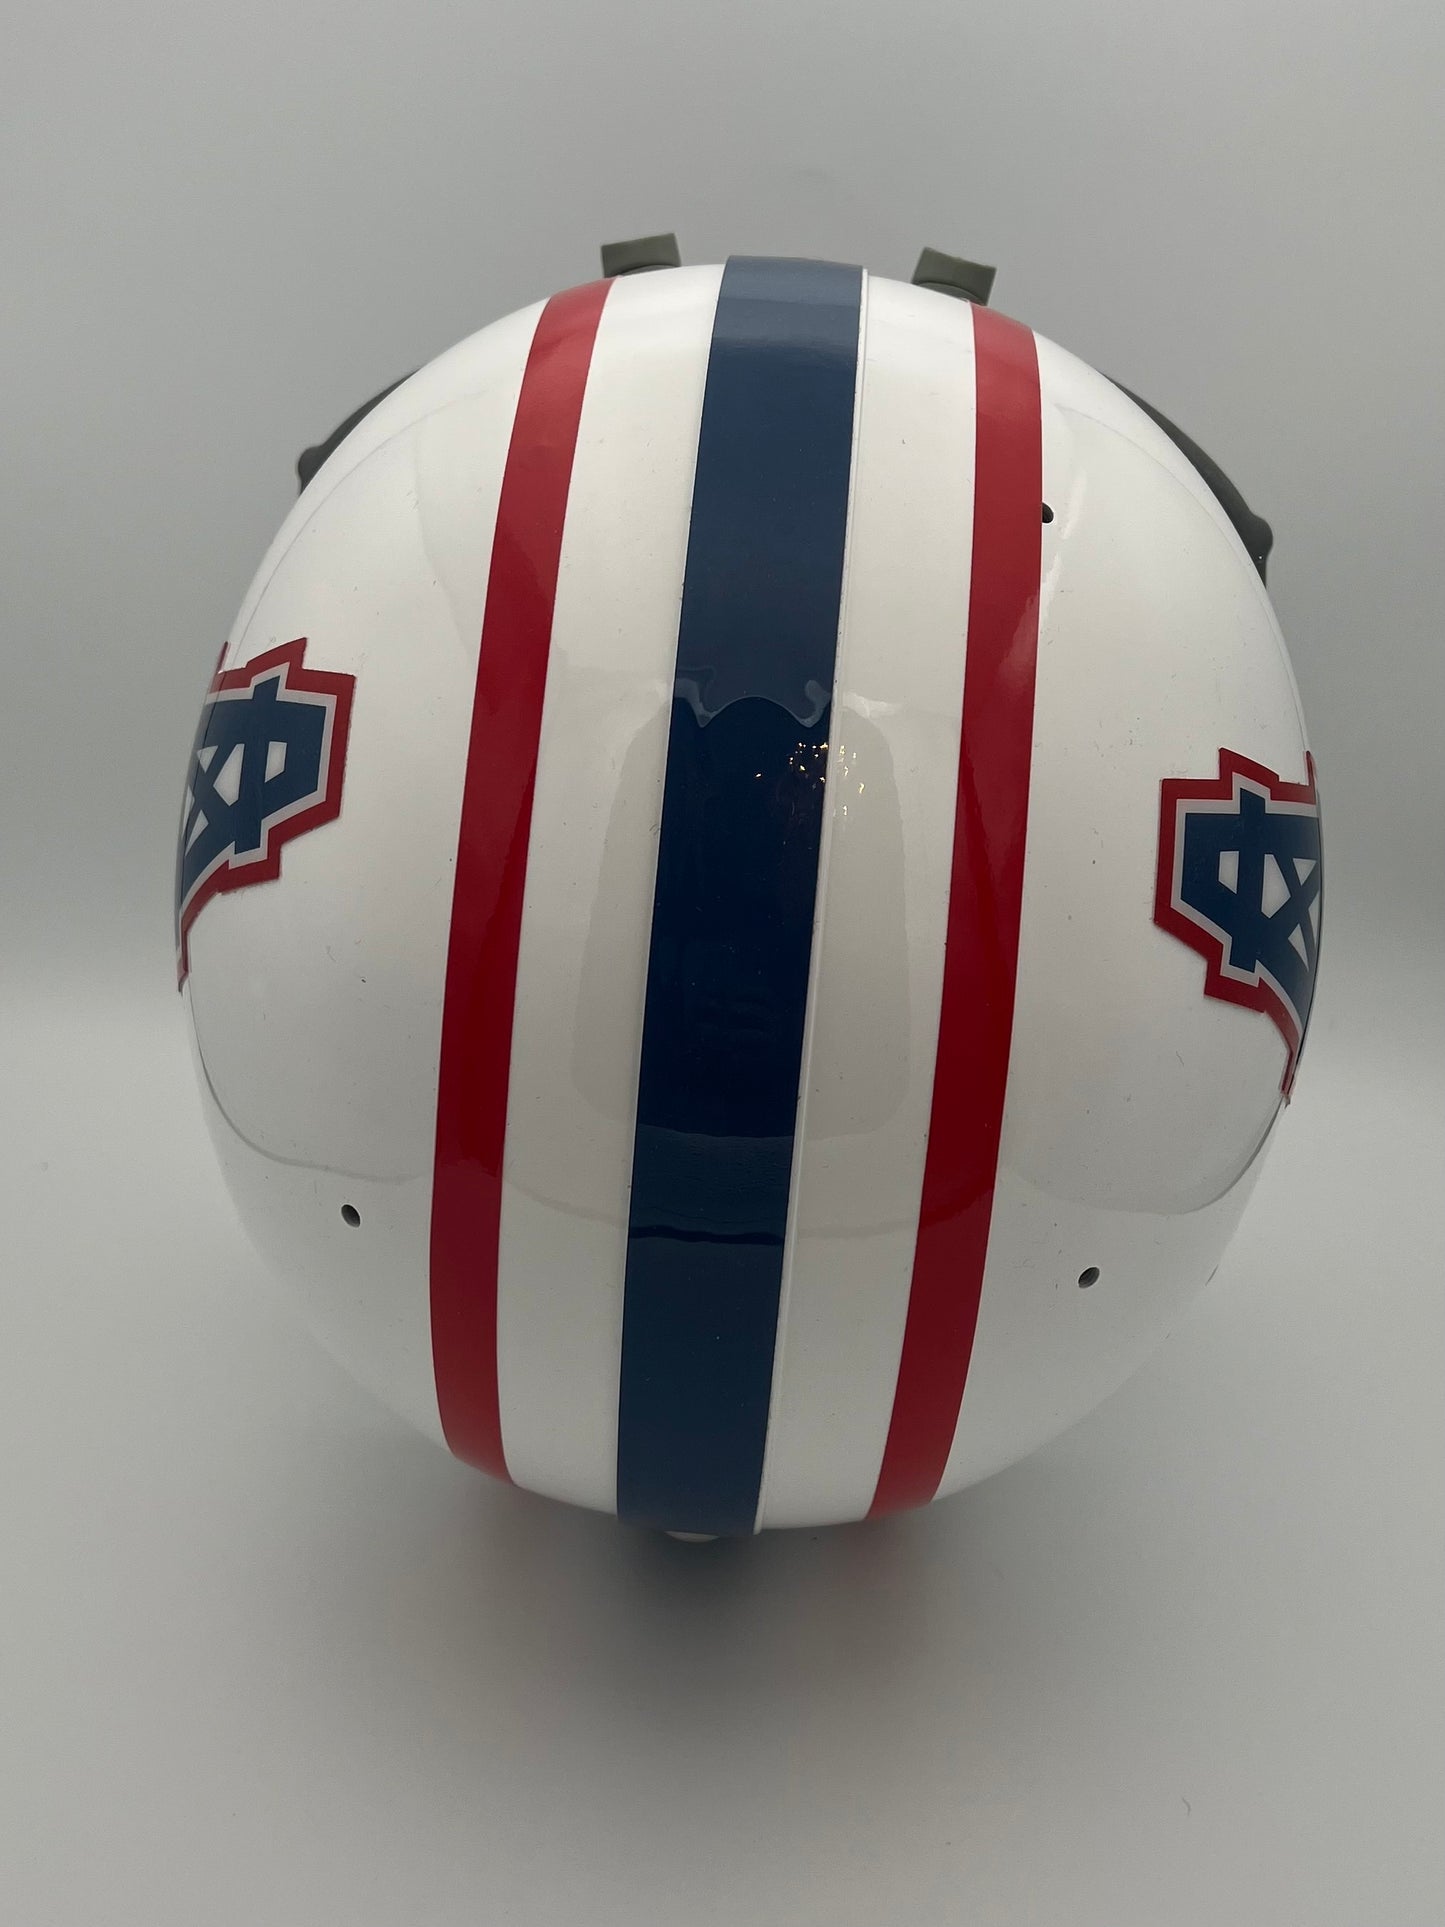 Custom TK2 Style Football Helmet- 1980 Houston Oilers Ken Stabler Sports Mem, Cards & Fan Shop:Fan Apparel & Souvenirs:Football-NFL Riddell   